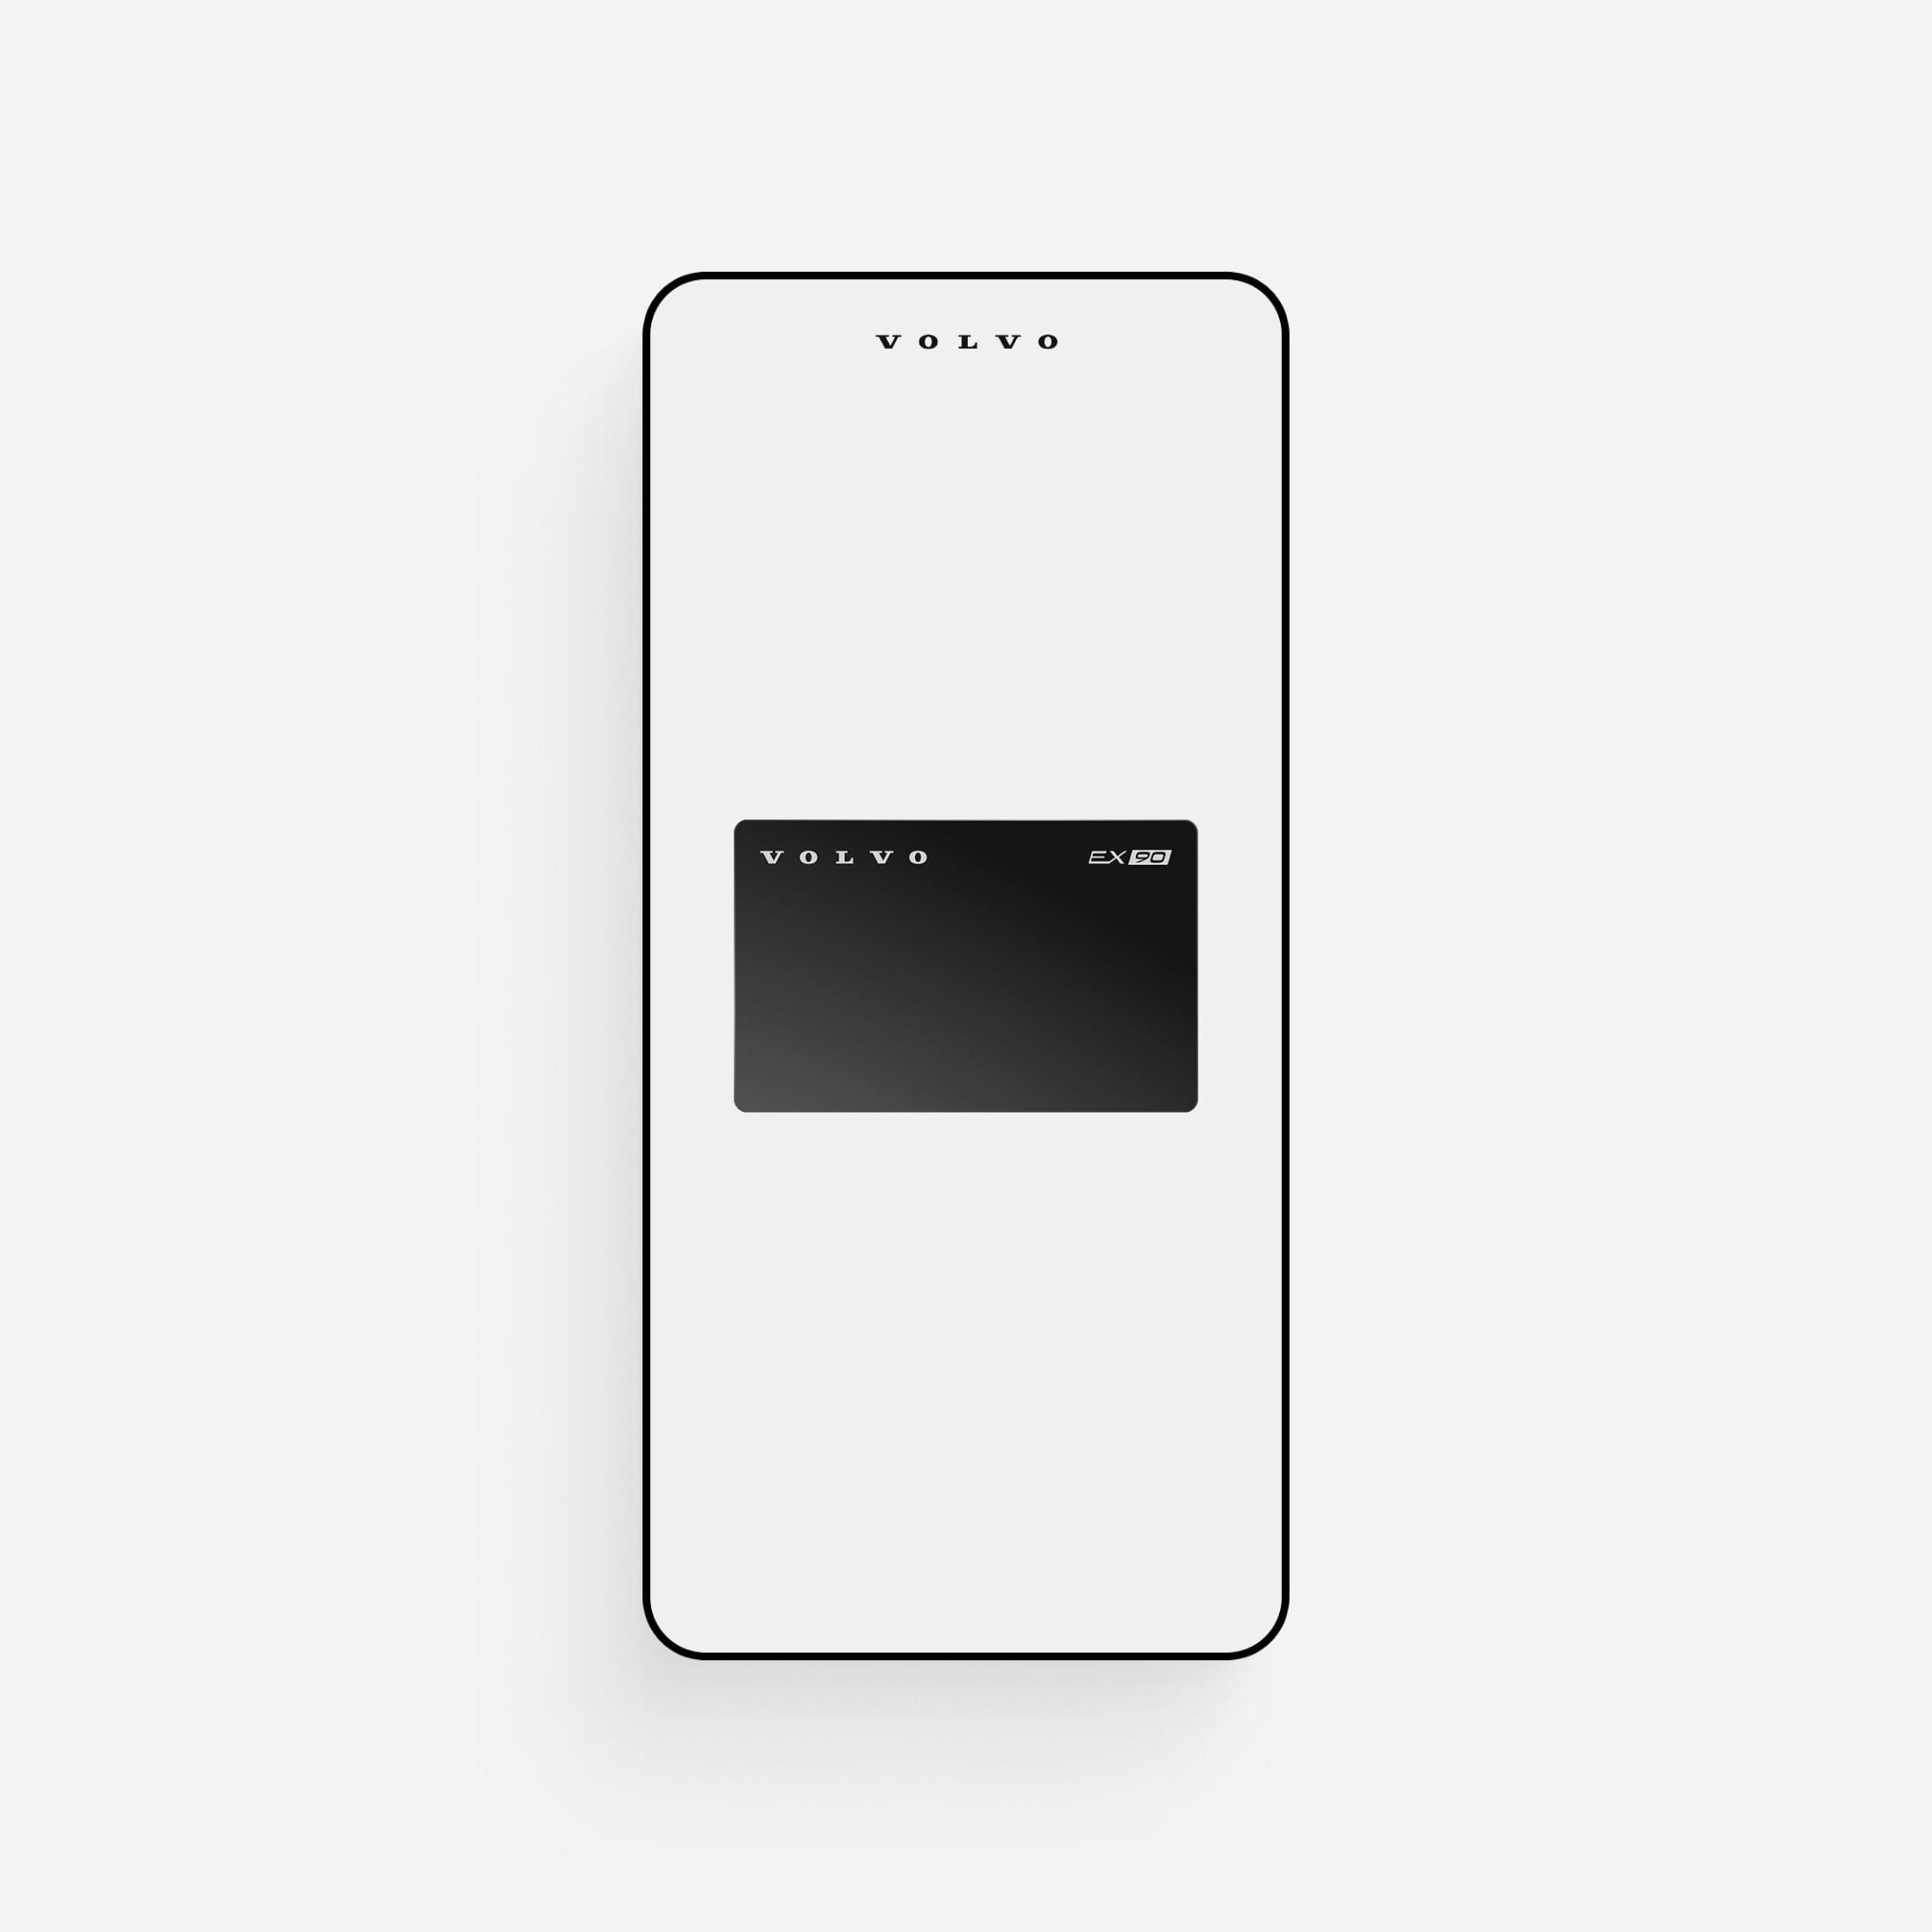 Изображение смартфона, на экране которого показана функция цифрового ключа приложения Volvo Cars app.